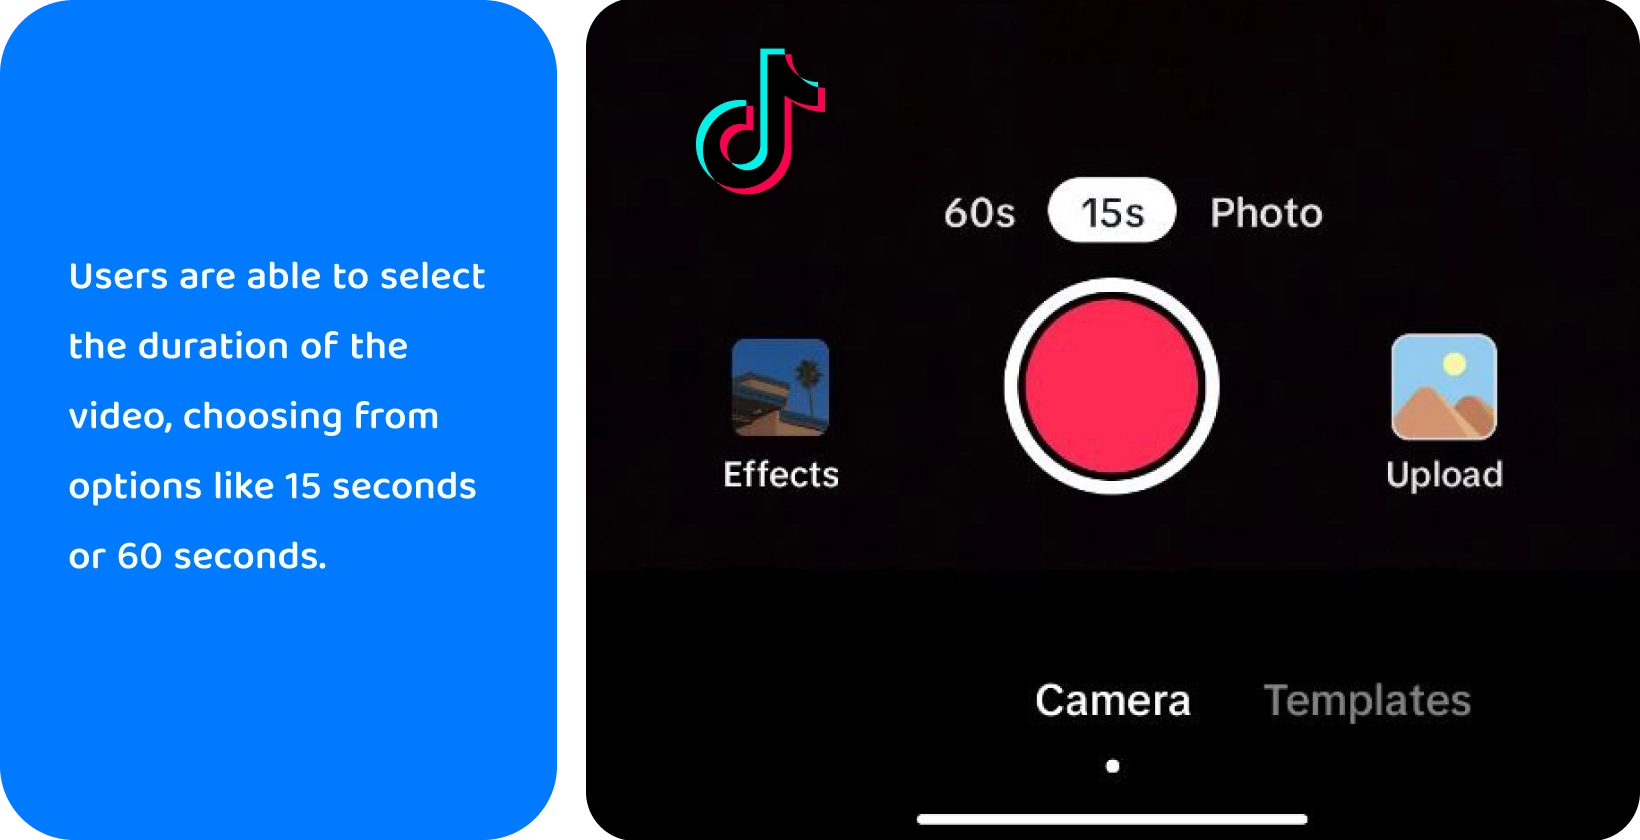 TikTok tallennusliittymä, jossa on vaihtoehtoja äänen lisäämiseen, kameran kääntämiseen, suodattimien käyttämiseen, ajastimen käyttämiseen ja muuhun luovaan videontekoon.
